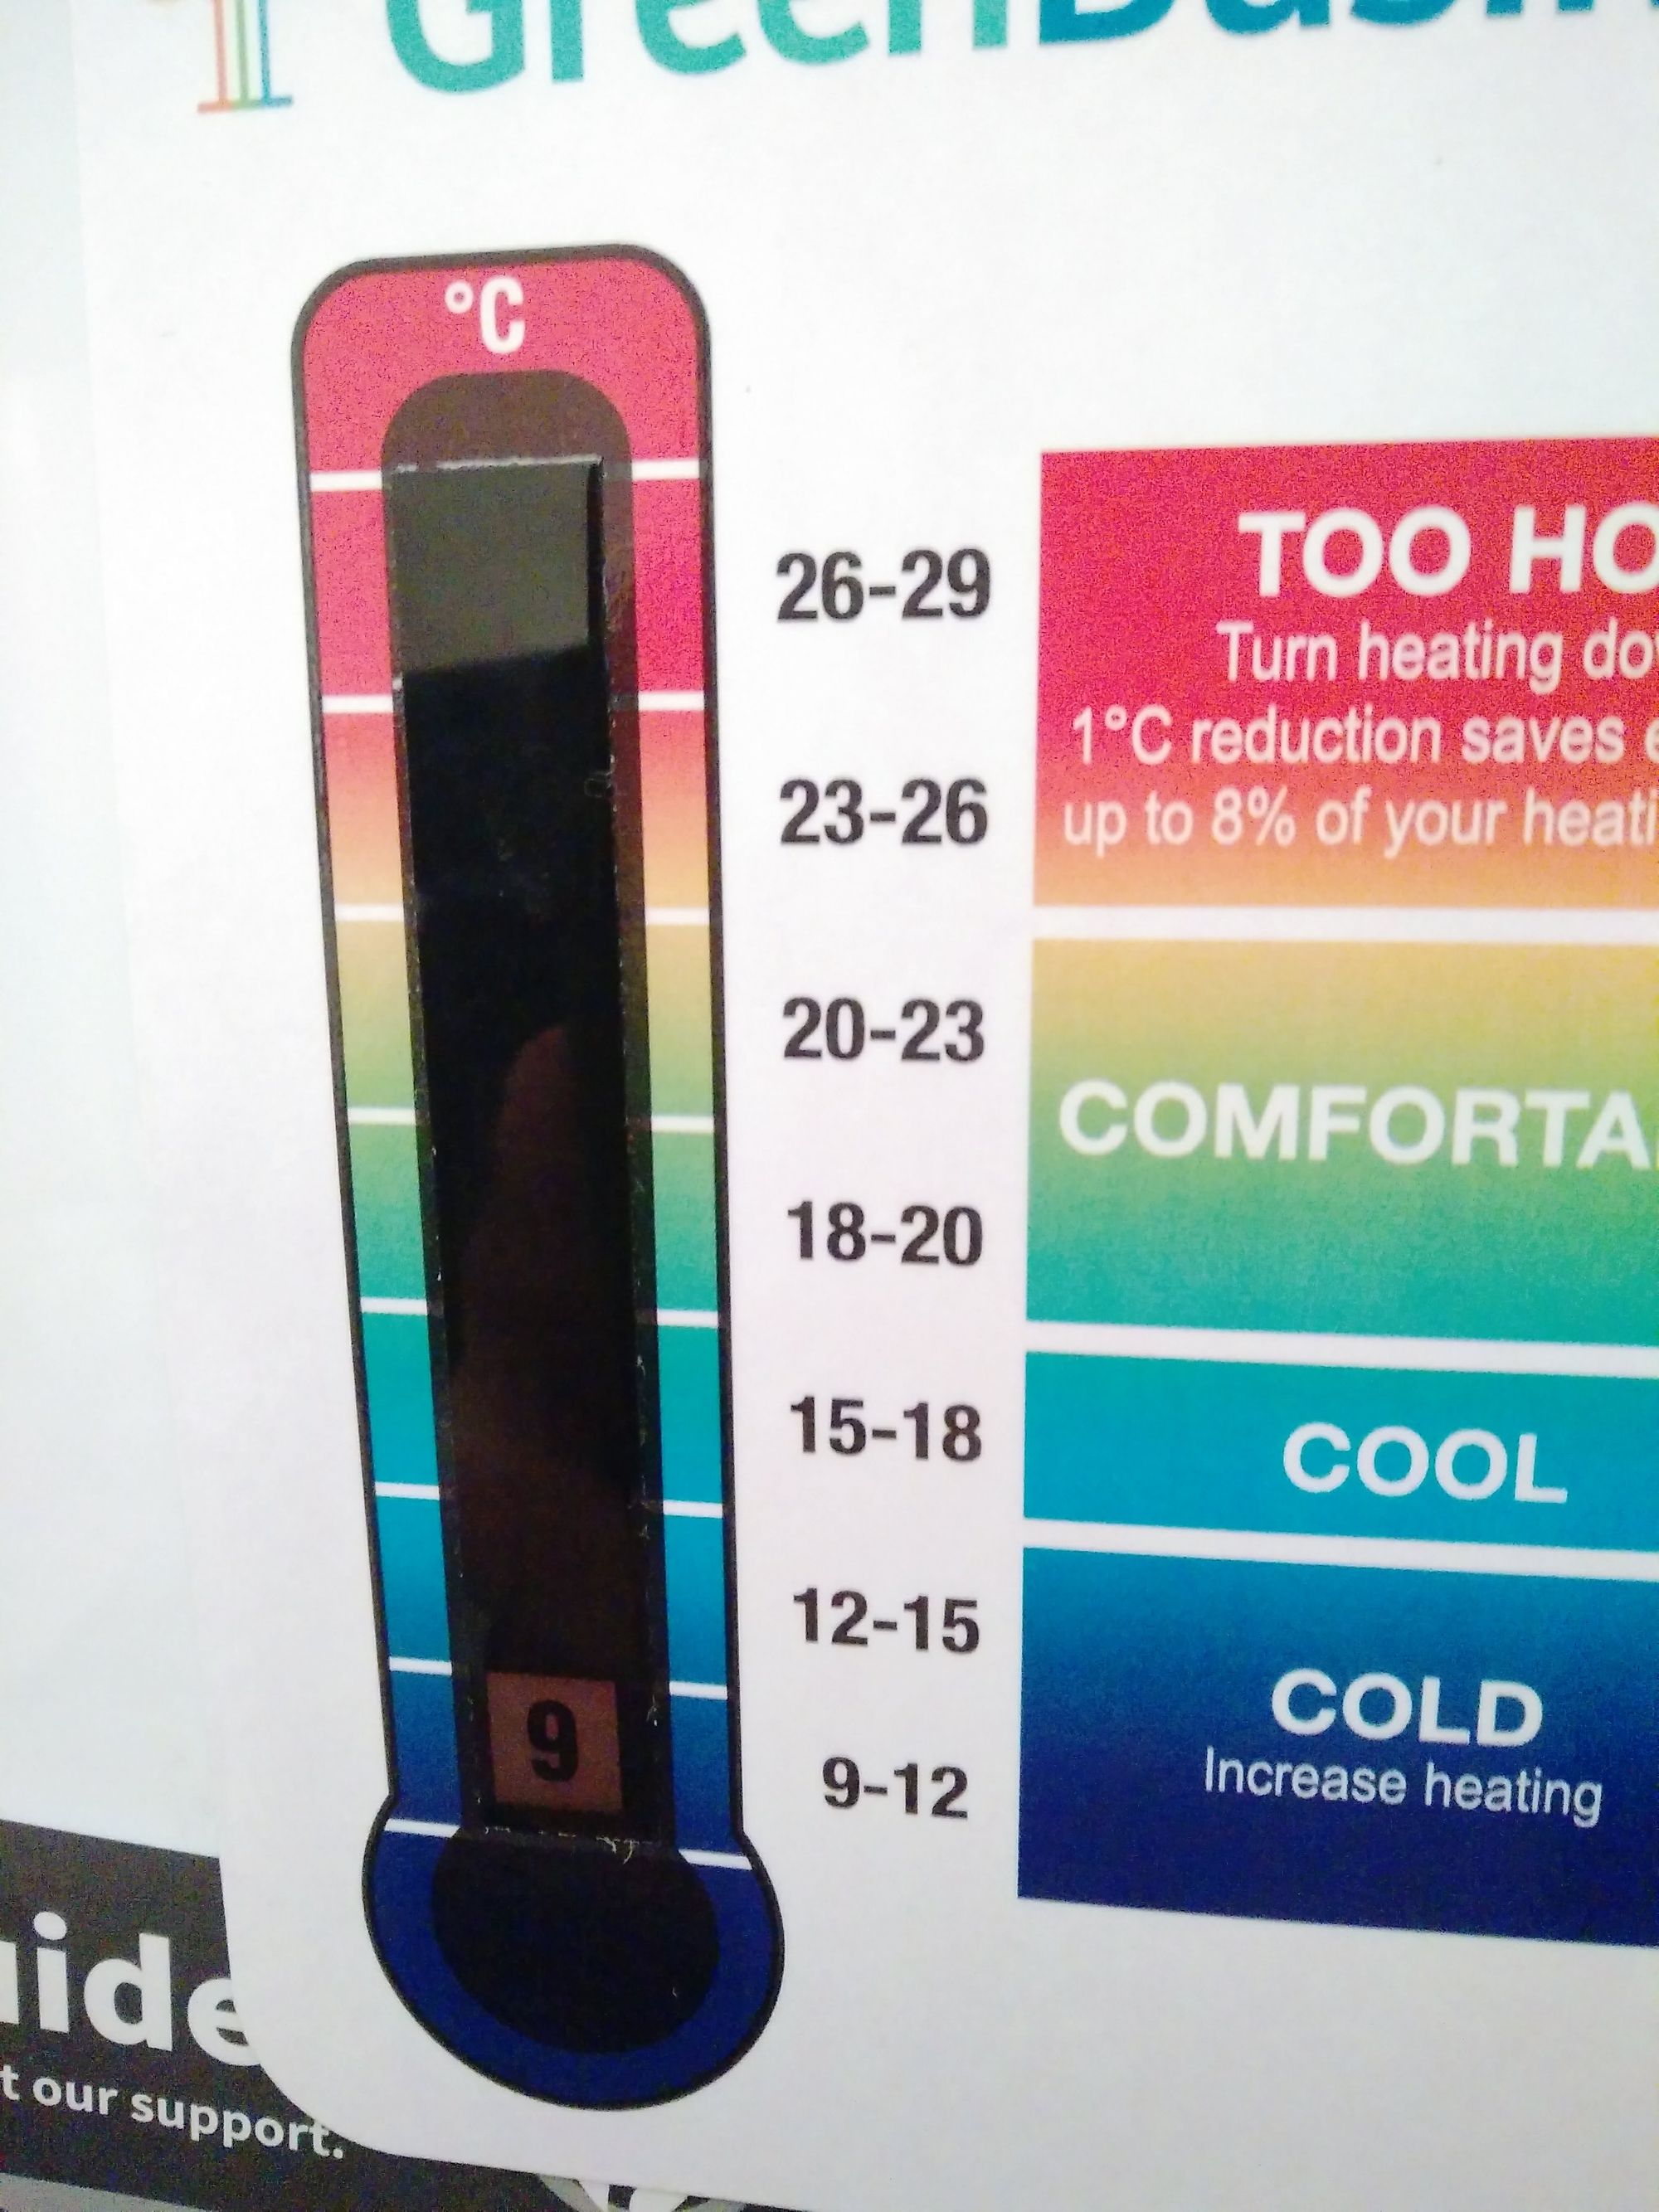 Termometr pokazujący 9 stopni temperatury.